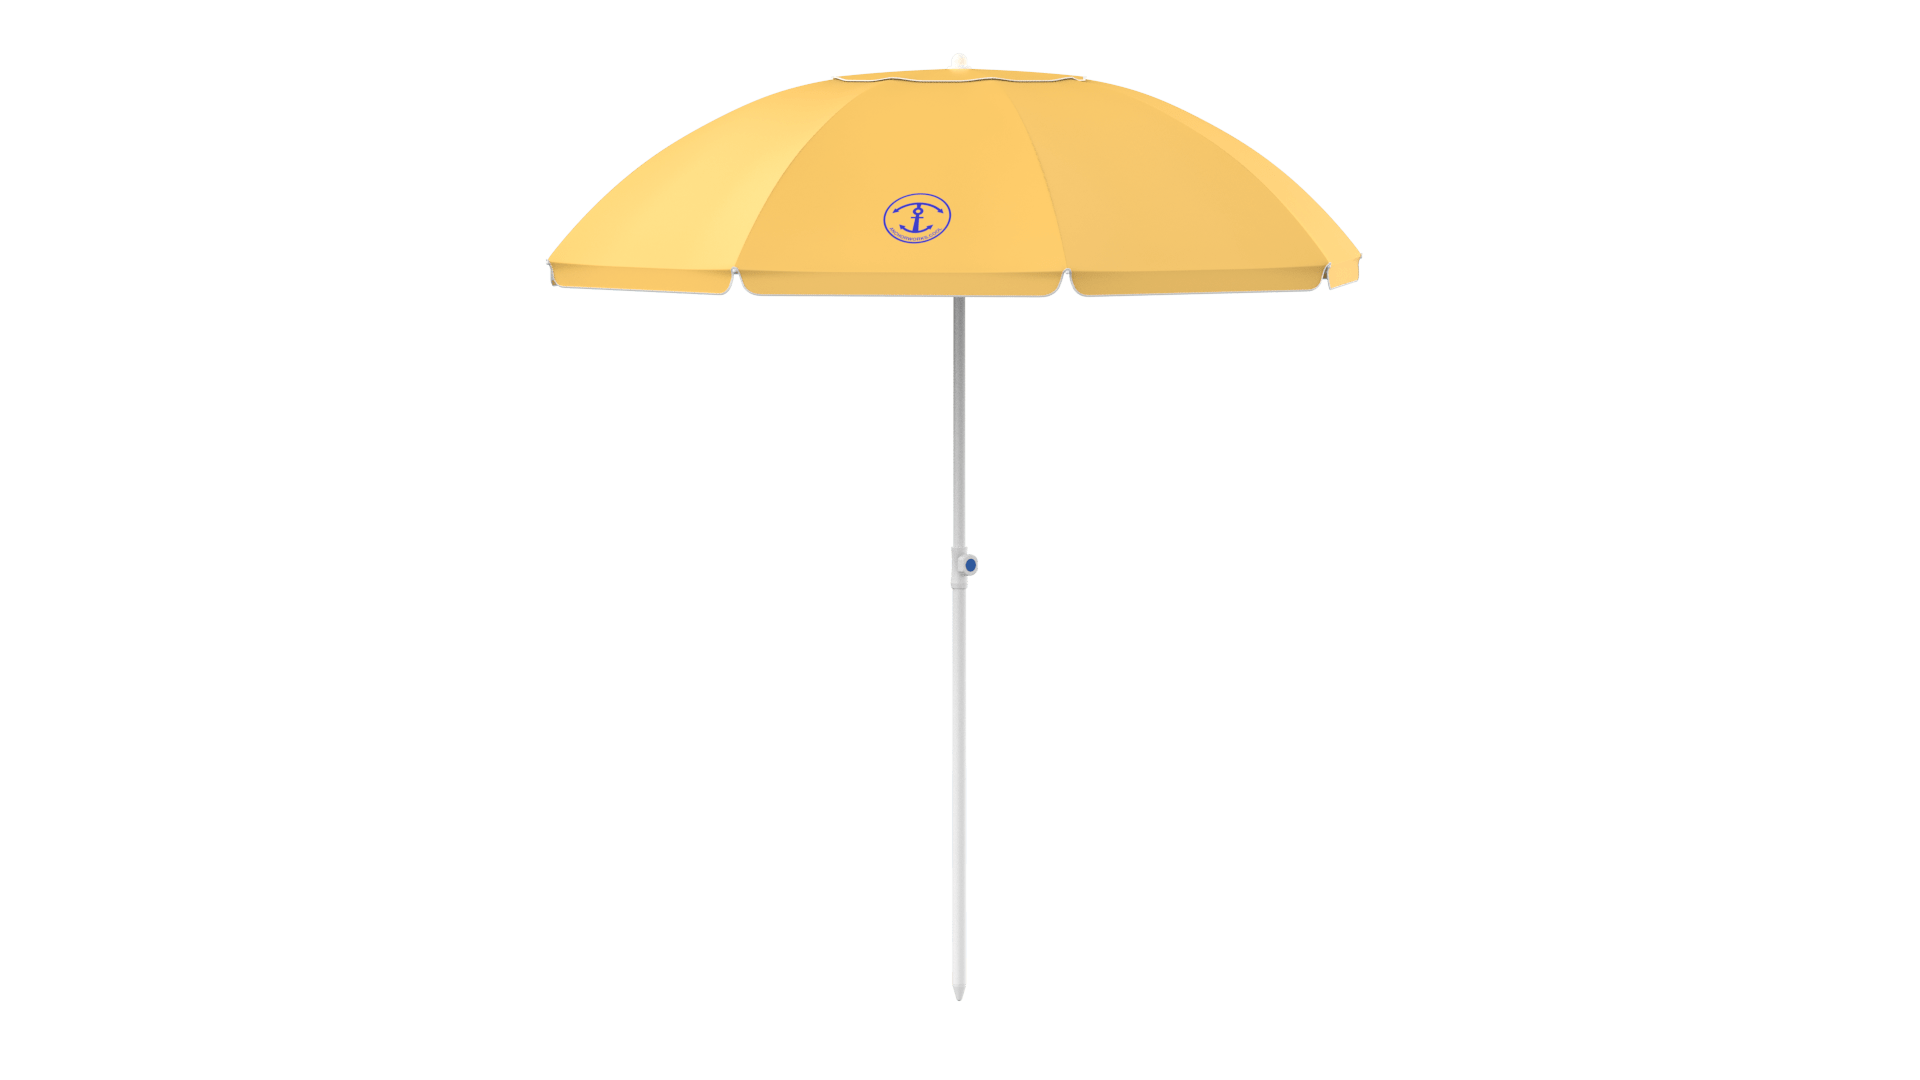 Orange Beach Umbrella